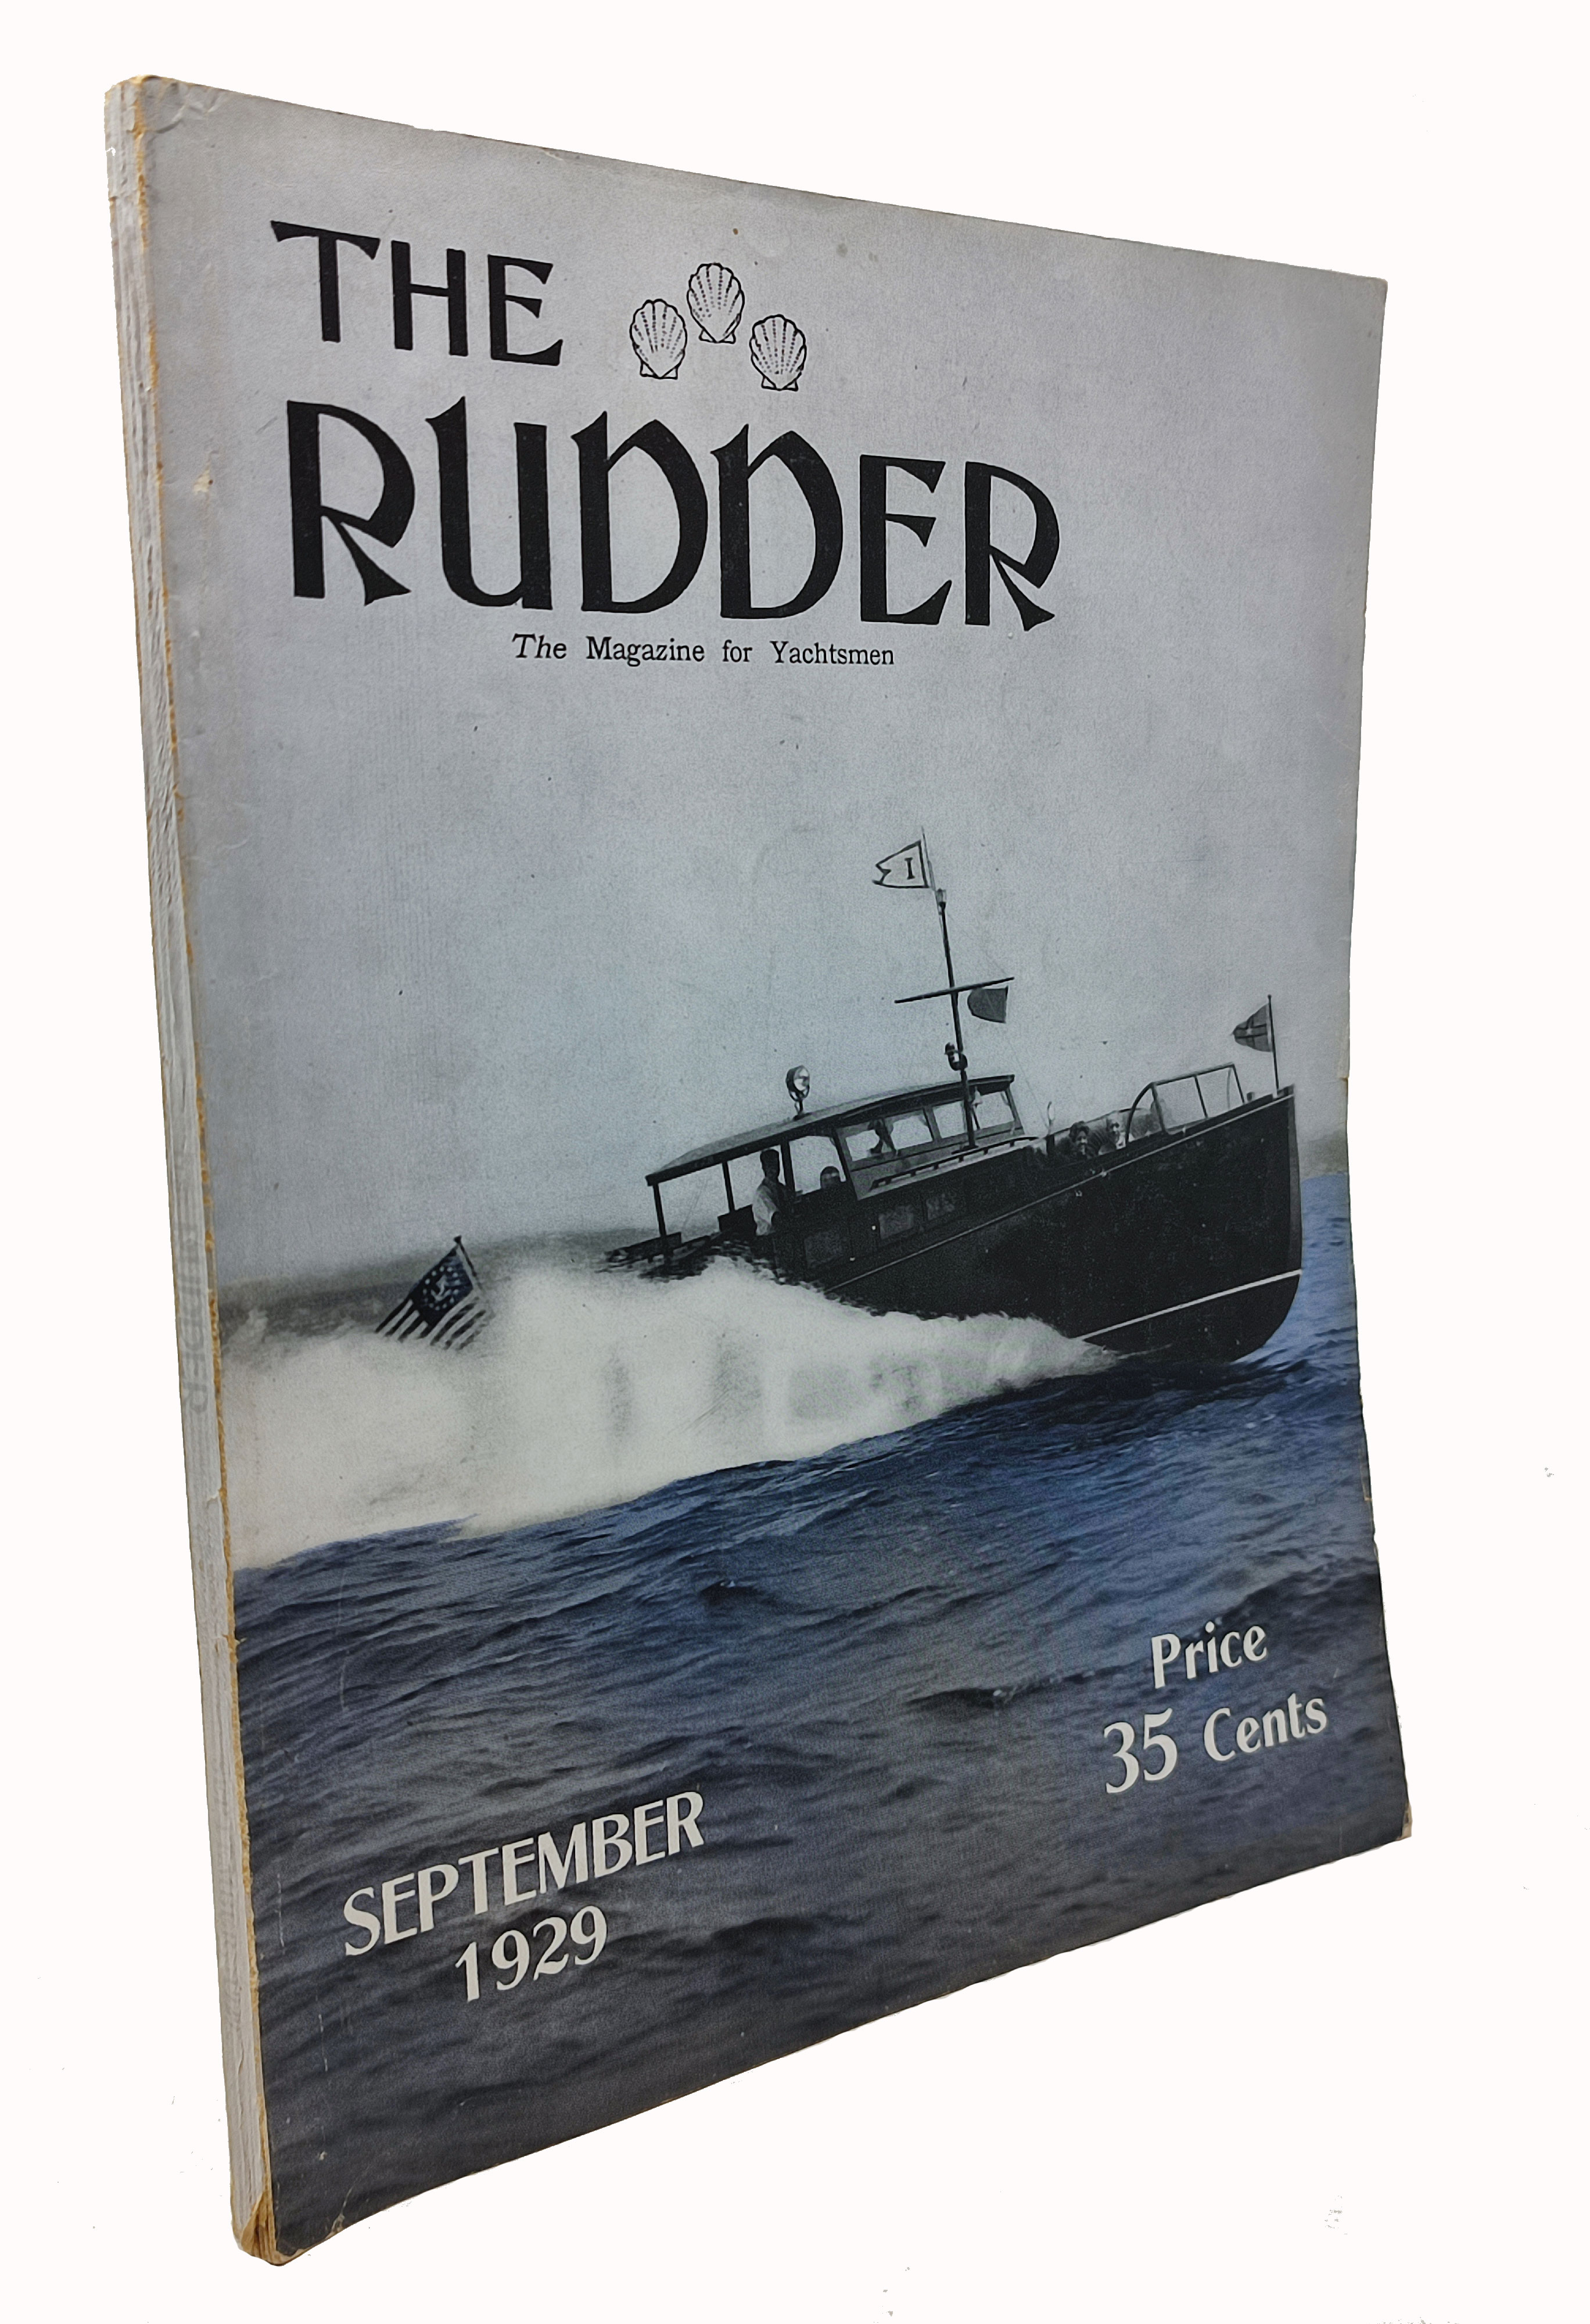 THE RUDDER / the Magazine for Yachtsmen (SEPTEMBER 1929)